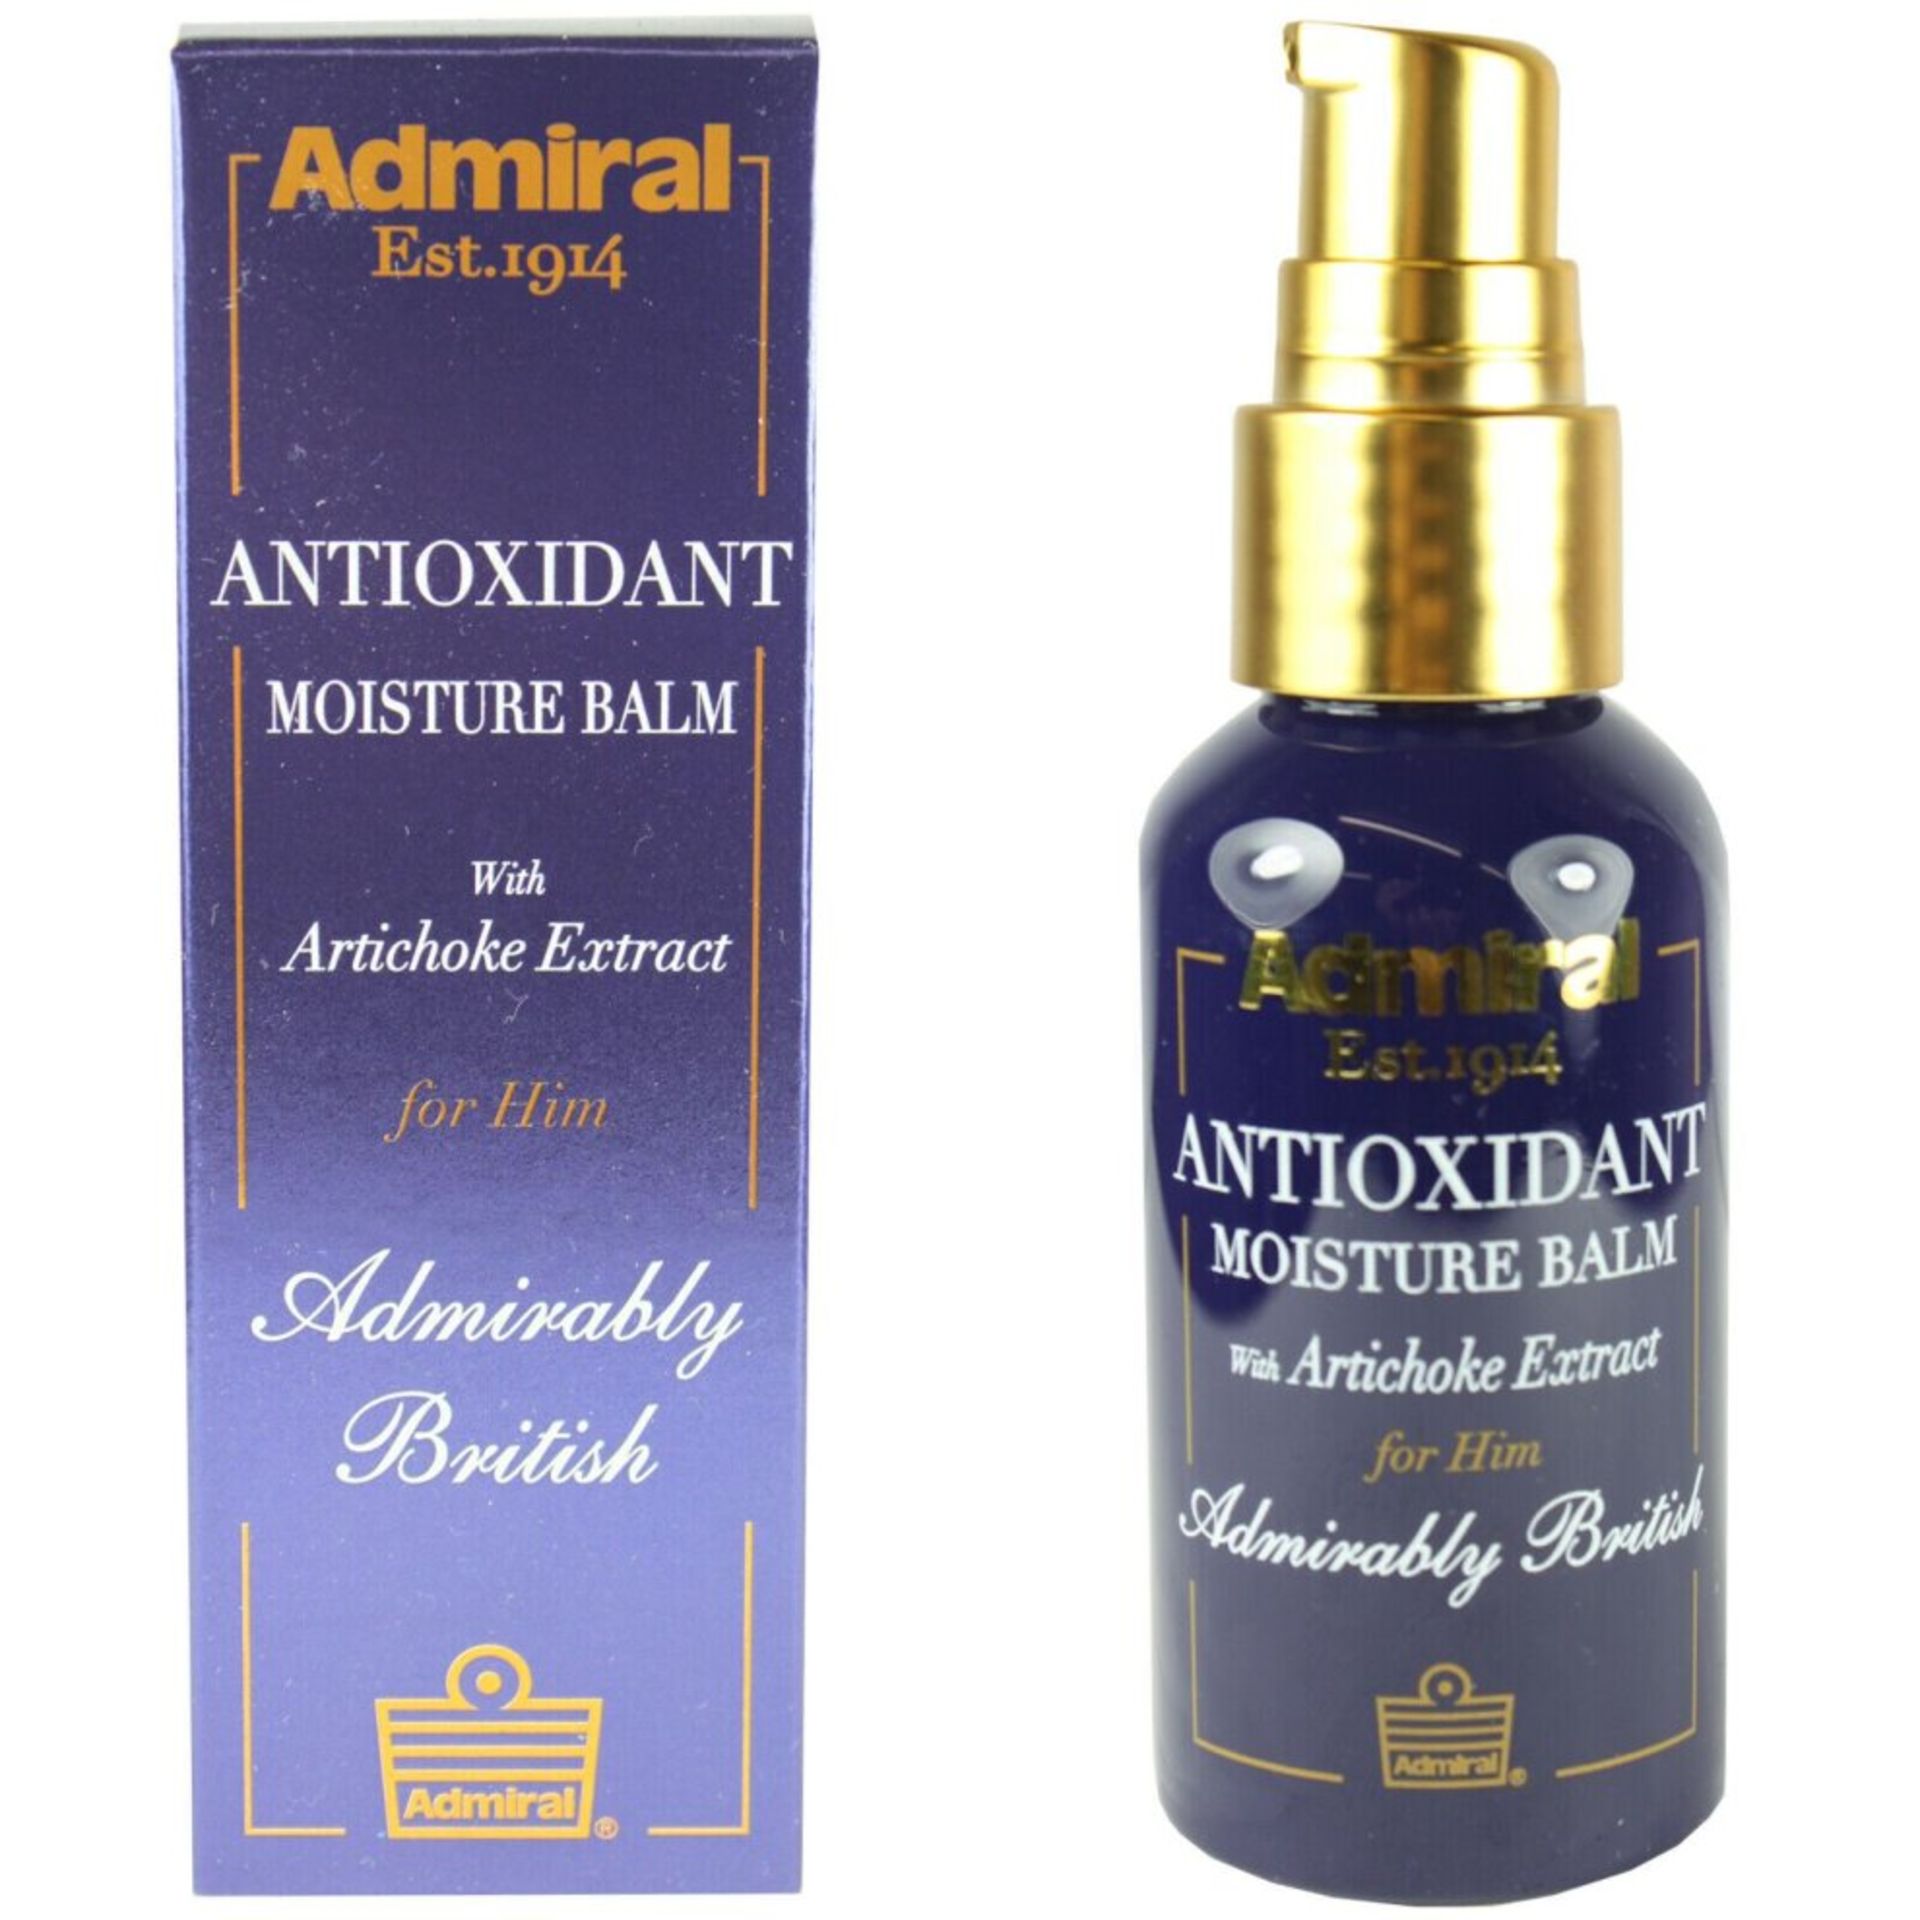 12 x Cougar/Admiral Antioxidant Moisturiser 50ml RRP 8.